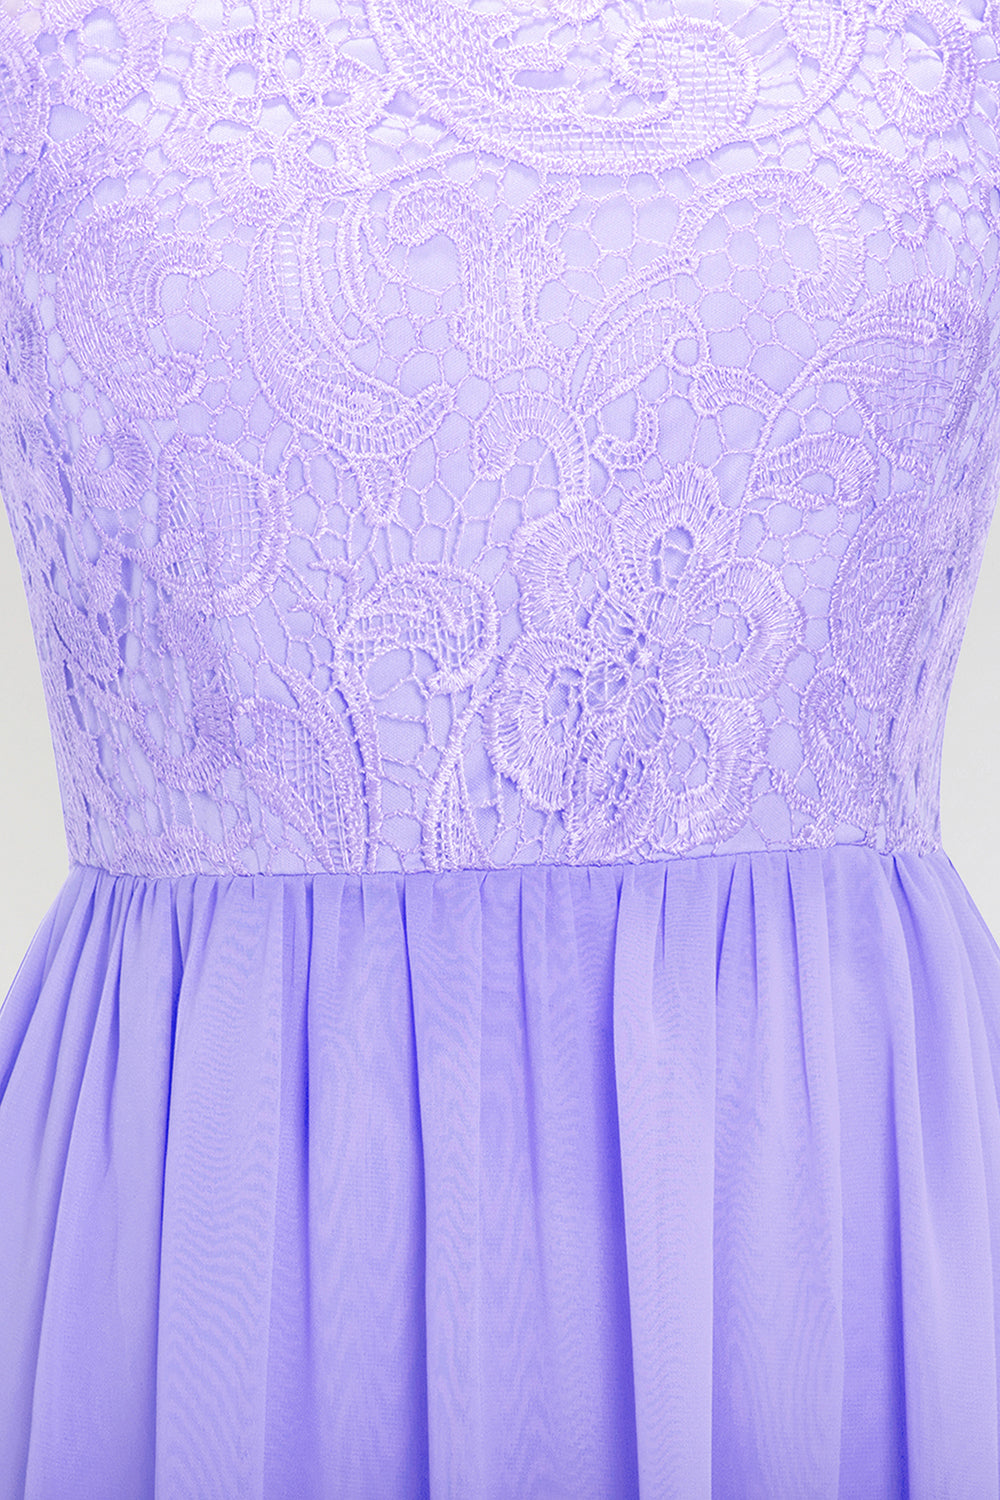 A-line Chiffon Lace Jewel Sleeveless Long Bridesmaid Dress with Ruffles-BIZTUNNEL